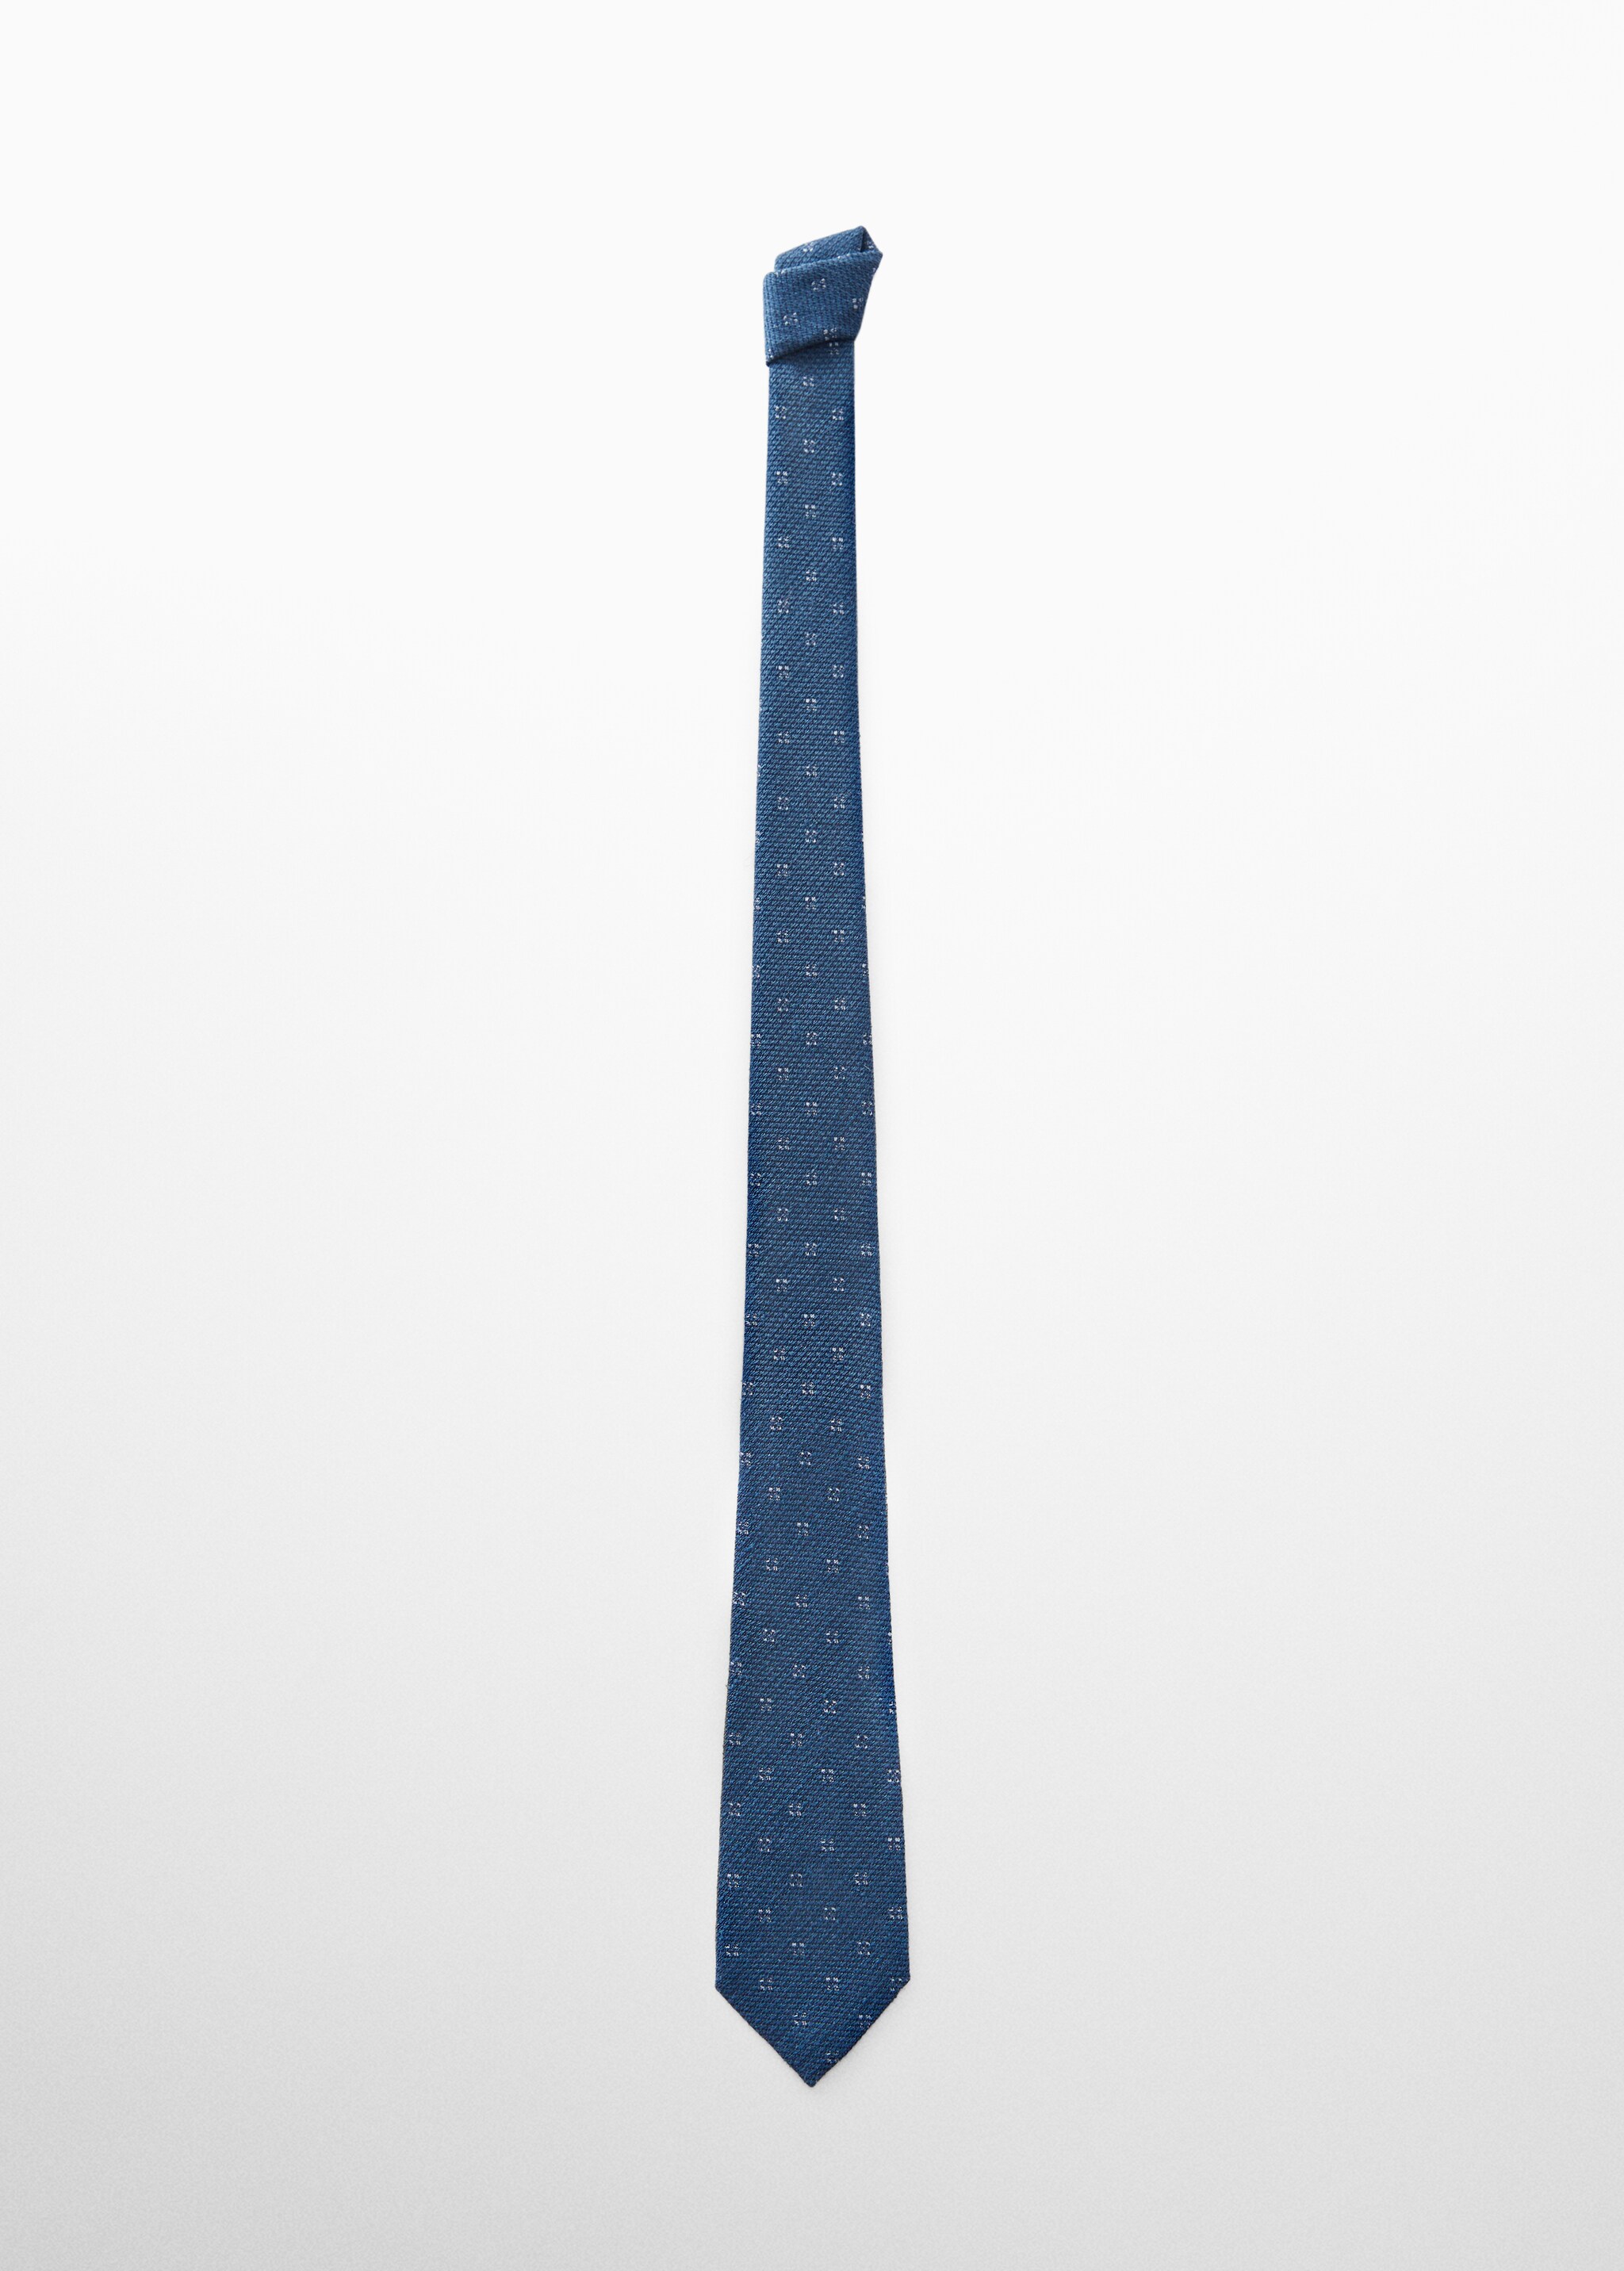 ربطة عنق حرير التوت منظمة بنسبة 100% - منتج دون نموذج